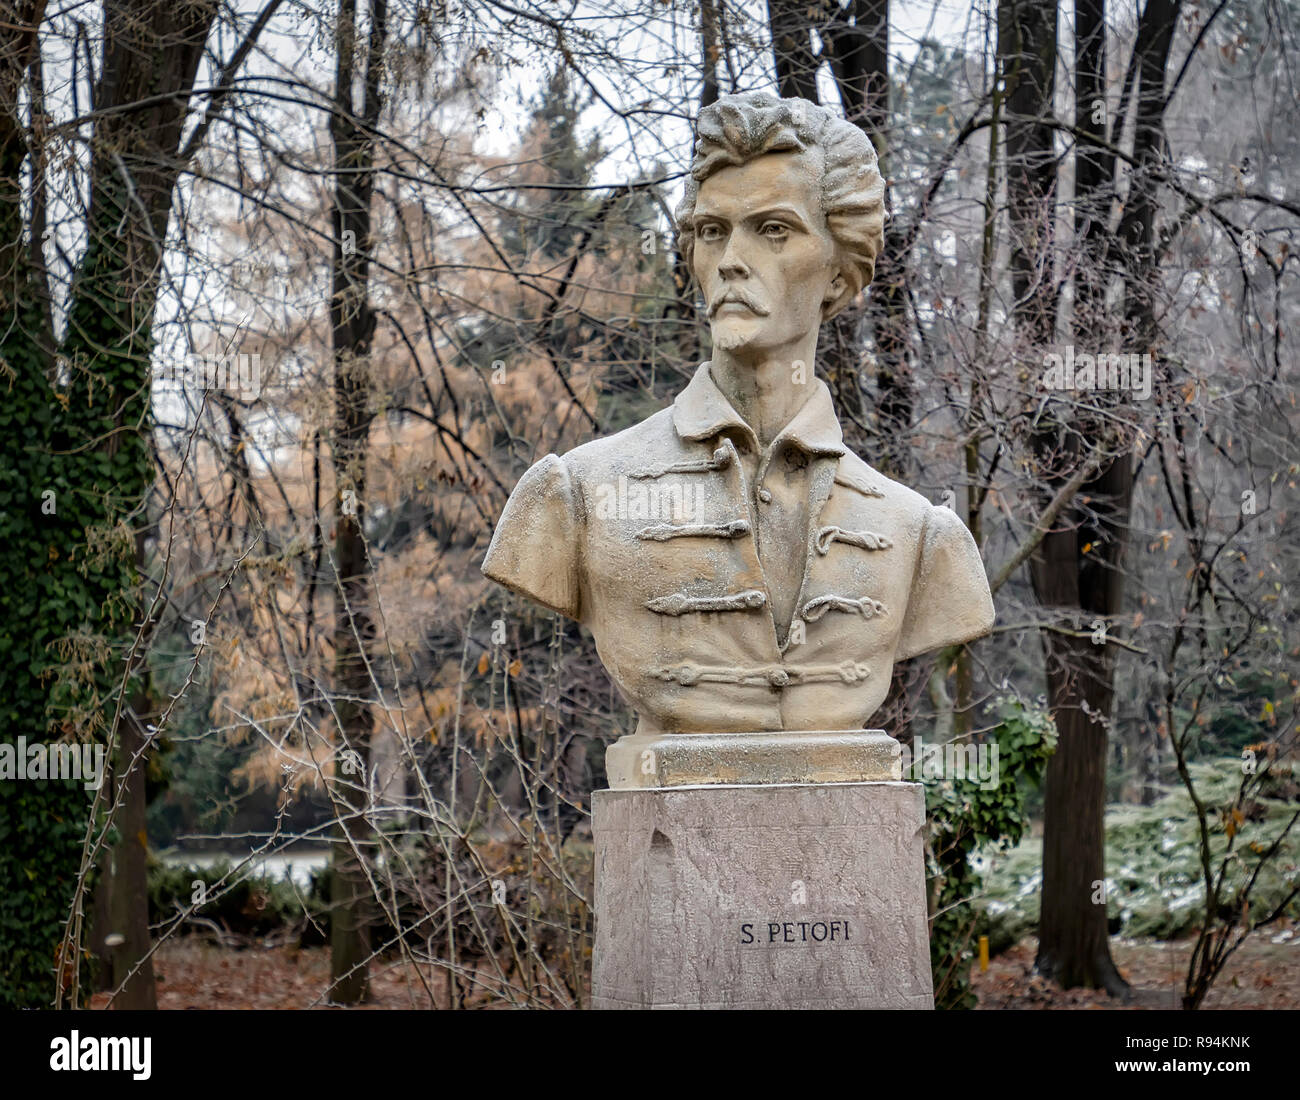 Bucarest, Roumanie - 7 décembre : La statue de Sandor Petofi est considéré à l'Parcul Regele Mihai I (Roi Mihai I Park) le 7 décembre 2018 à Bucarest, Roumanie. Il a été l'un des plus importants poète hongrois au 19e siècle. Banque D'Images